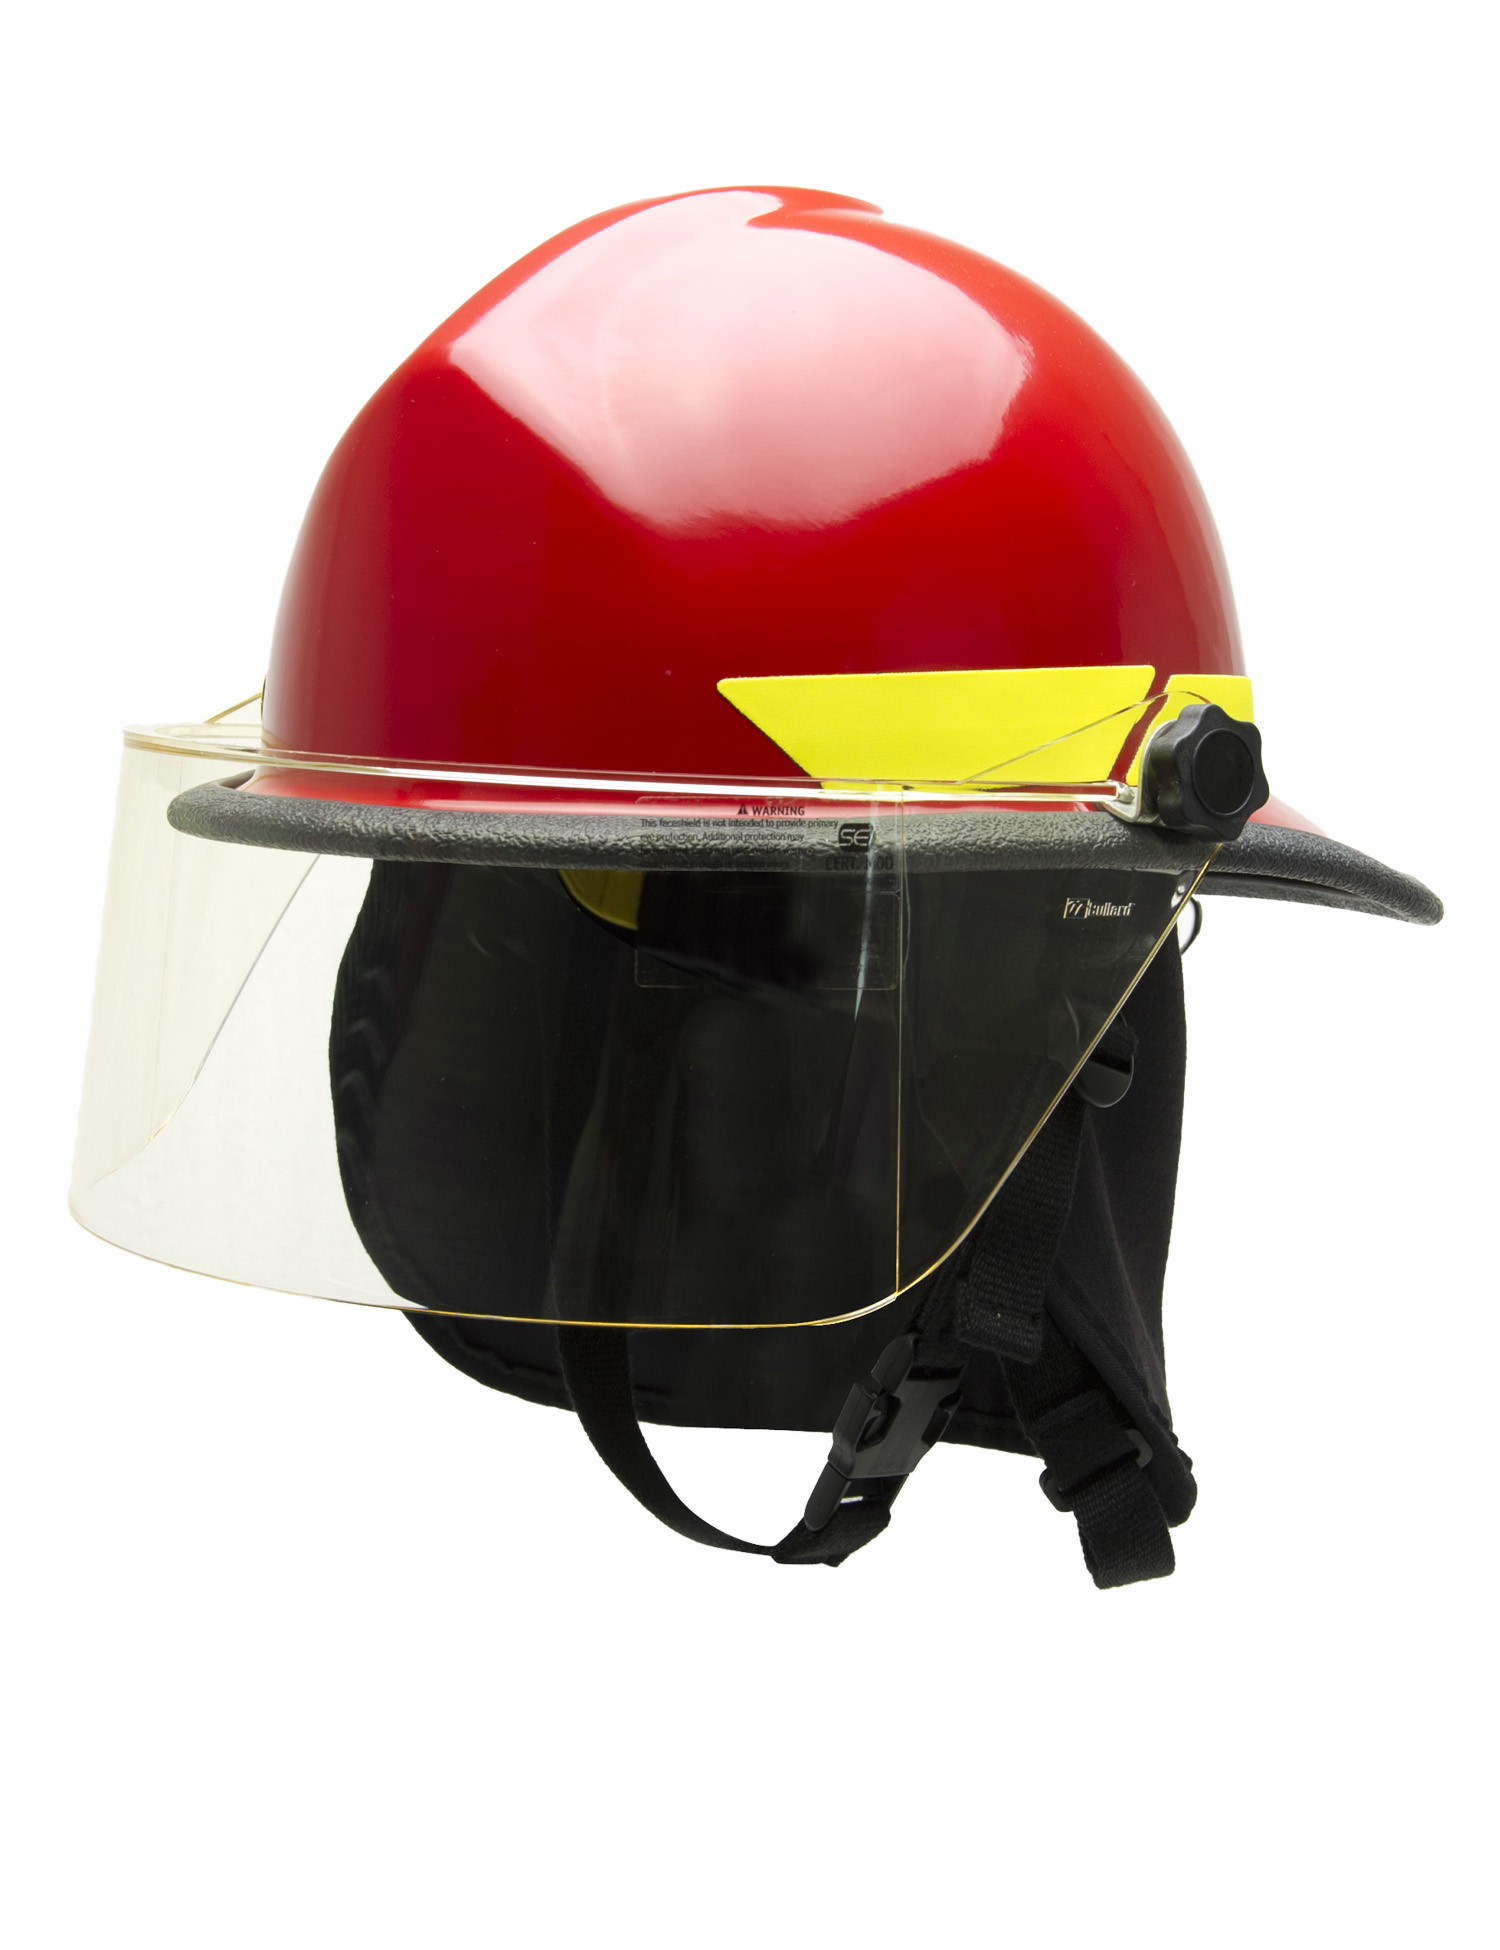 Bullard fxe model firefighter helmet